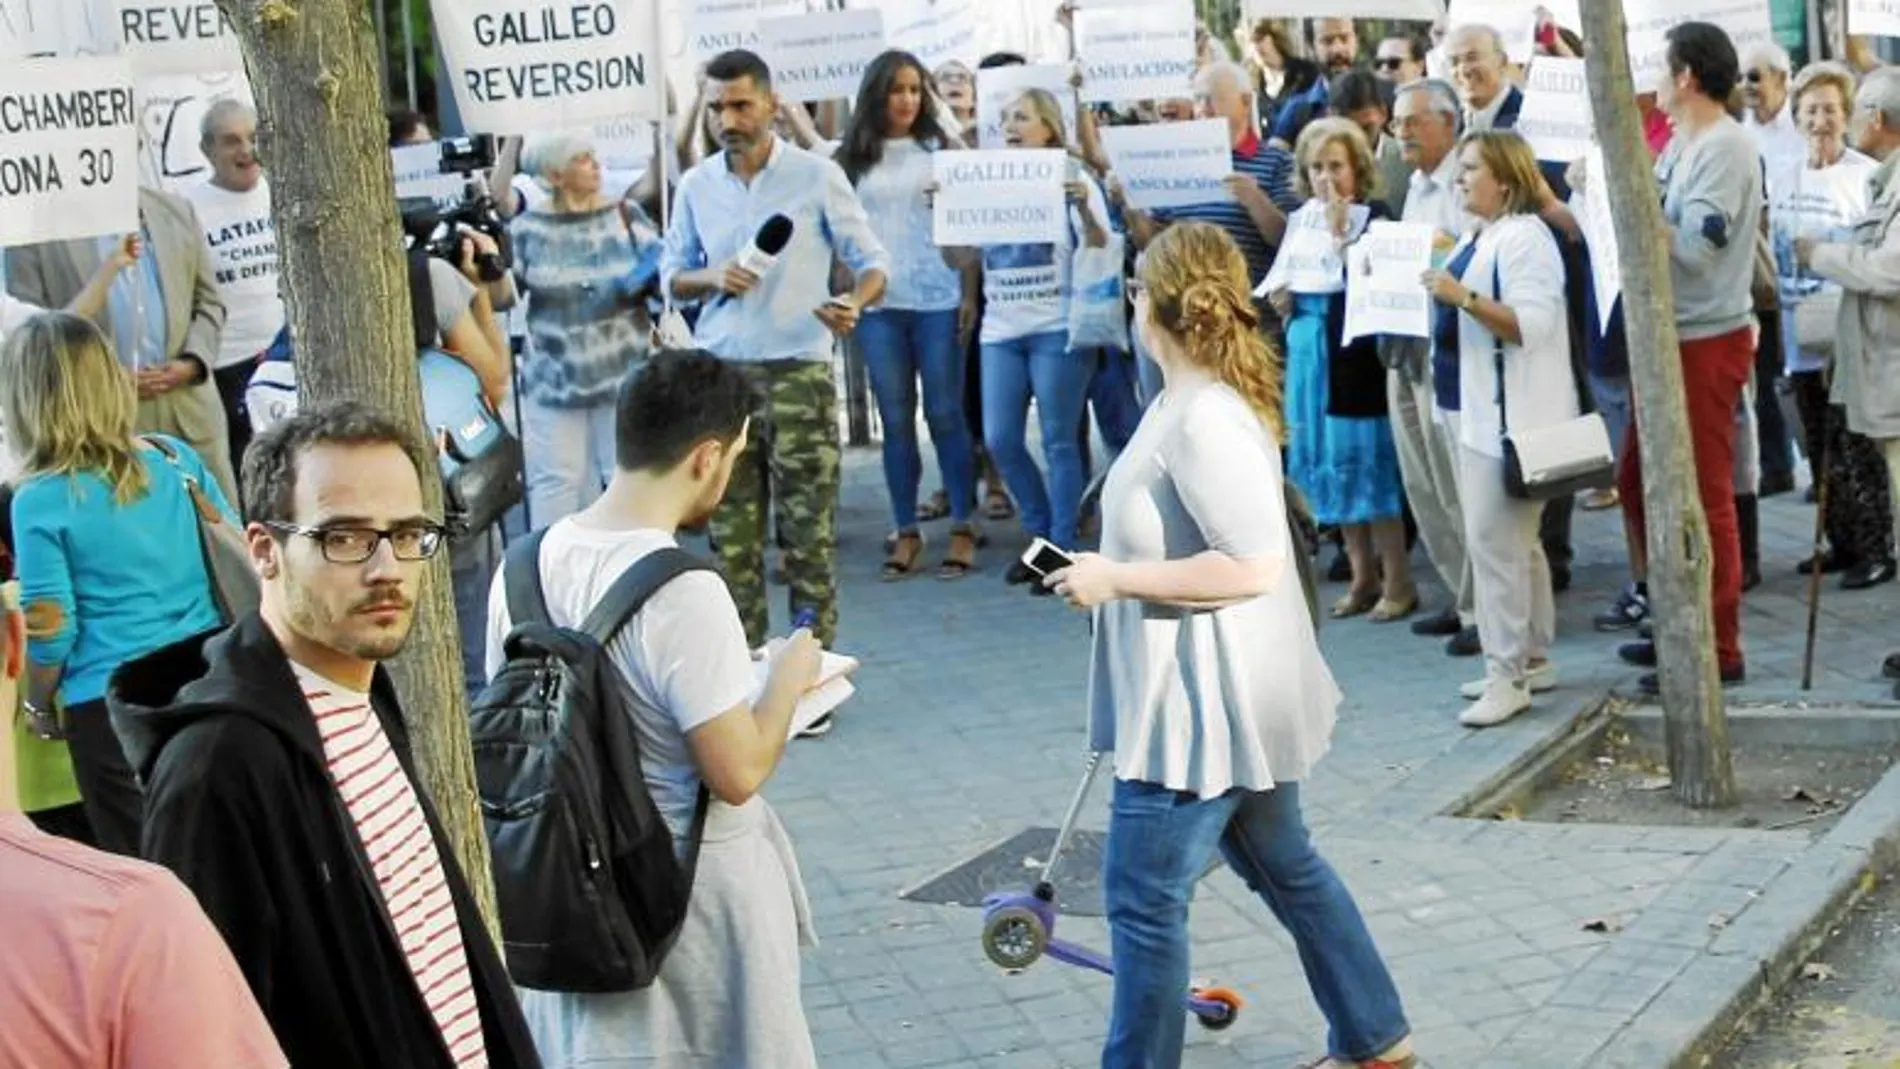 Protesta vecinal para conseguir la reversión total del proyecto «Despacio Galileo», el 28 de septiembre de 2017